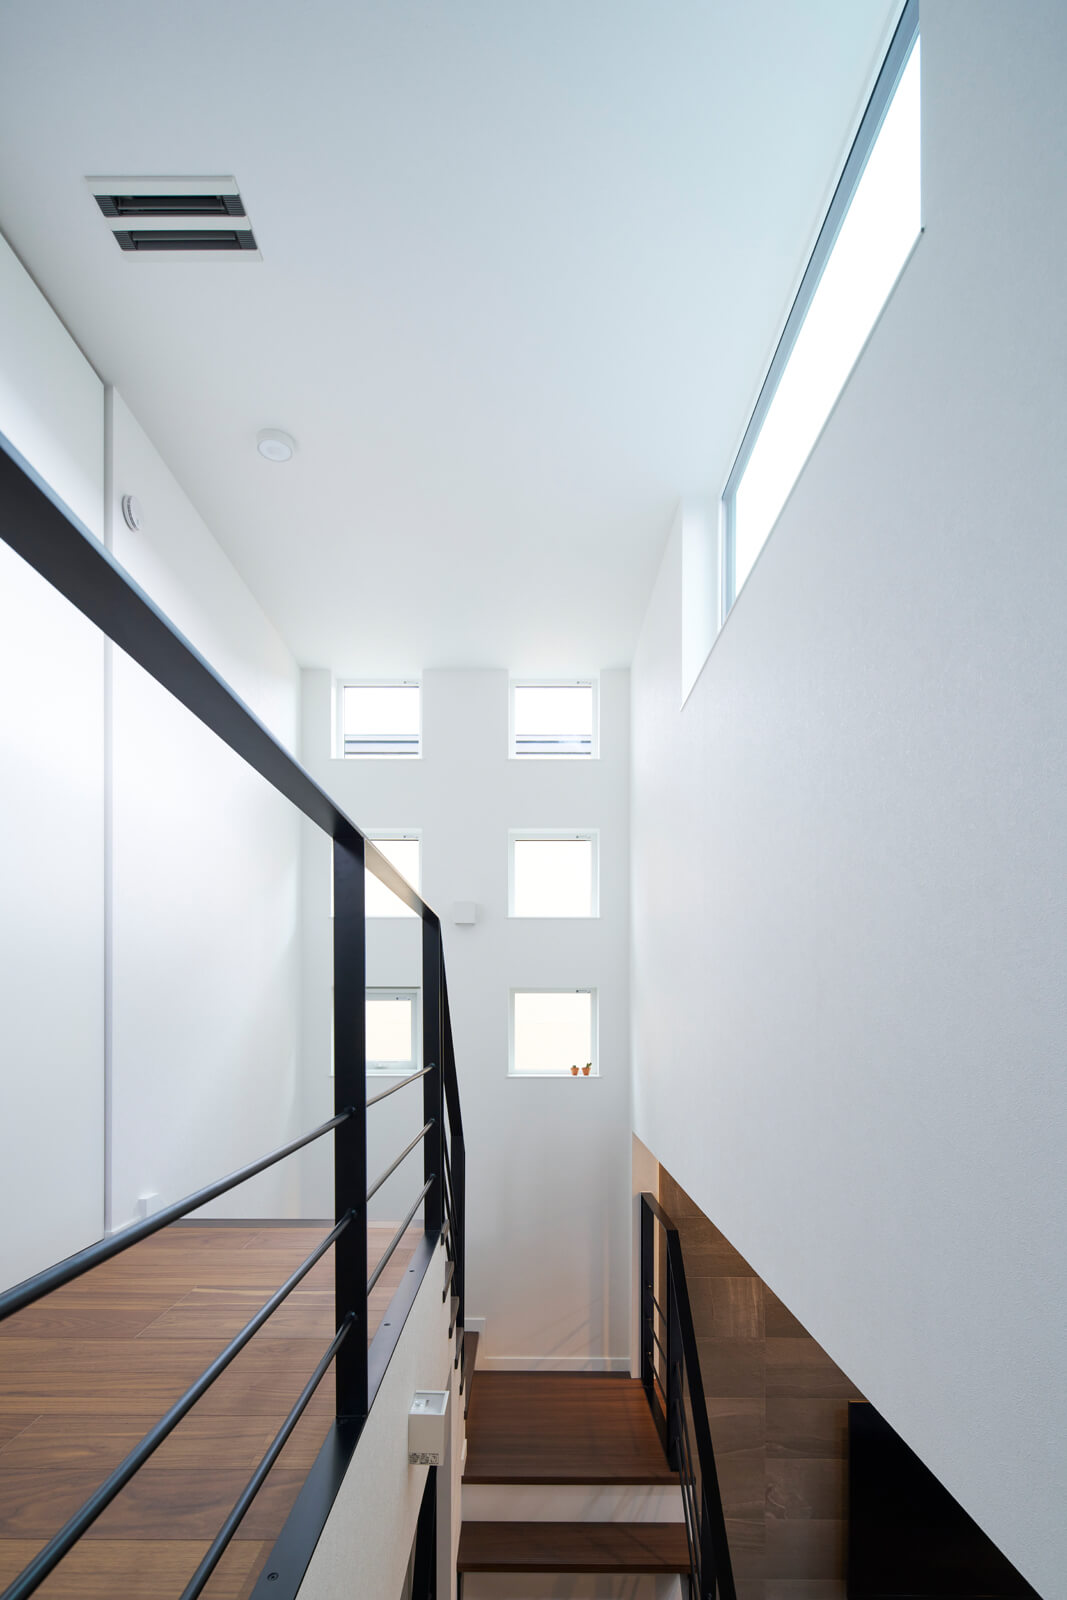 2階の廊下はスリット窓から入る光で明るく、エアコンの吹き出し口で適温に保たれている。1階の床と2階の天井の温度差は2℃もないほど